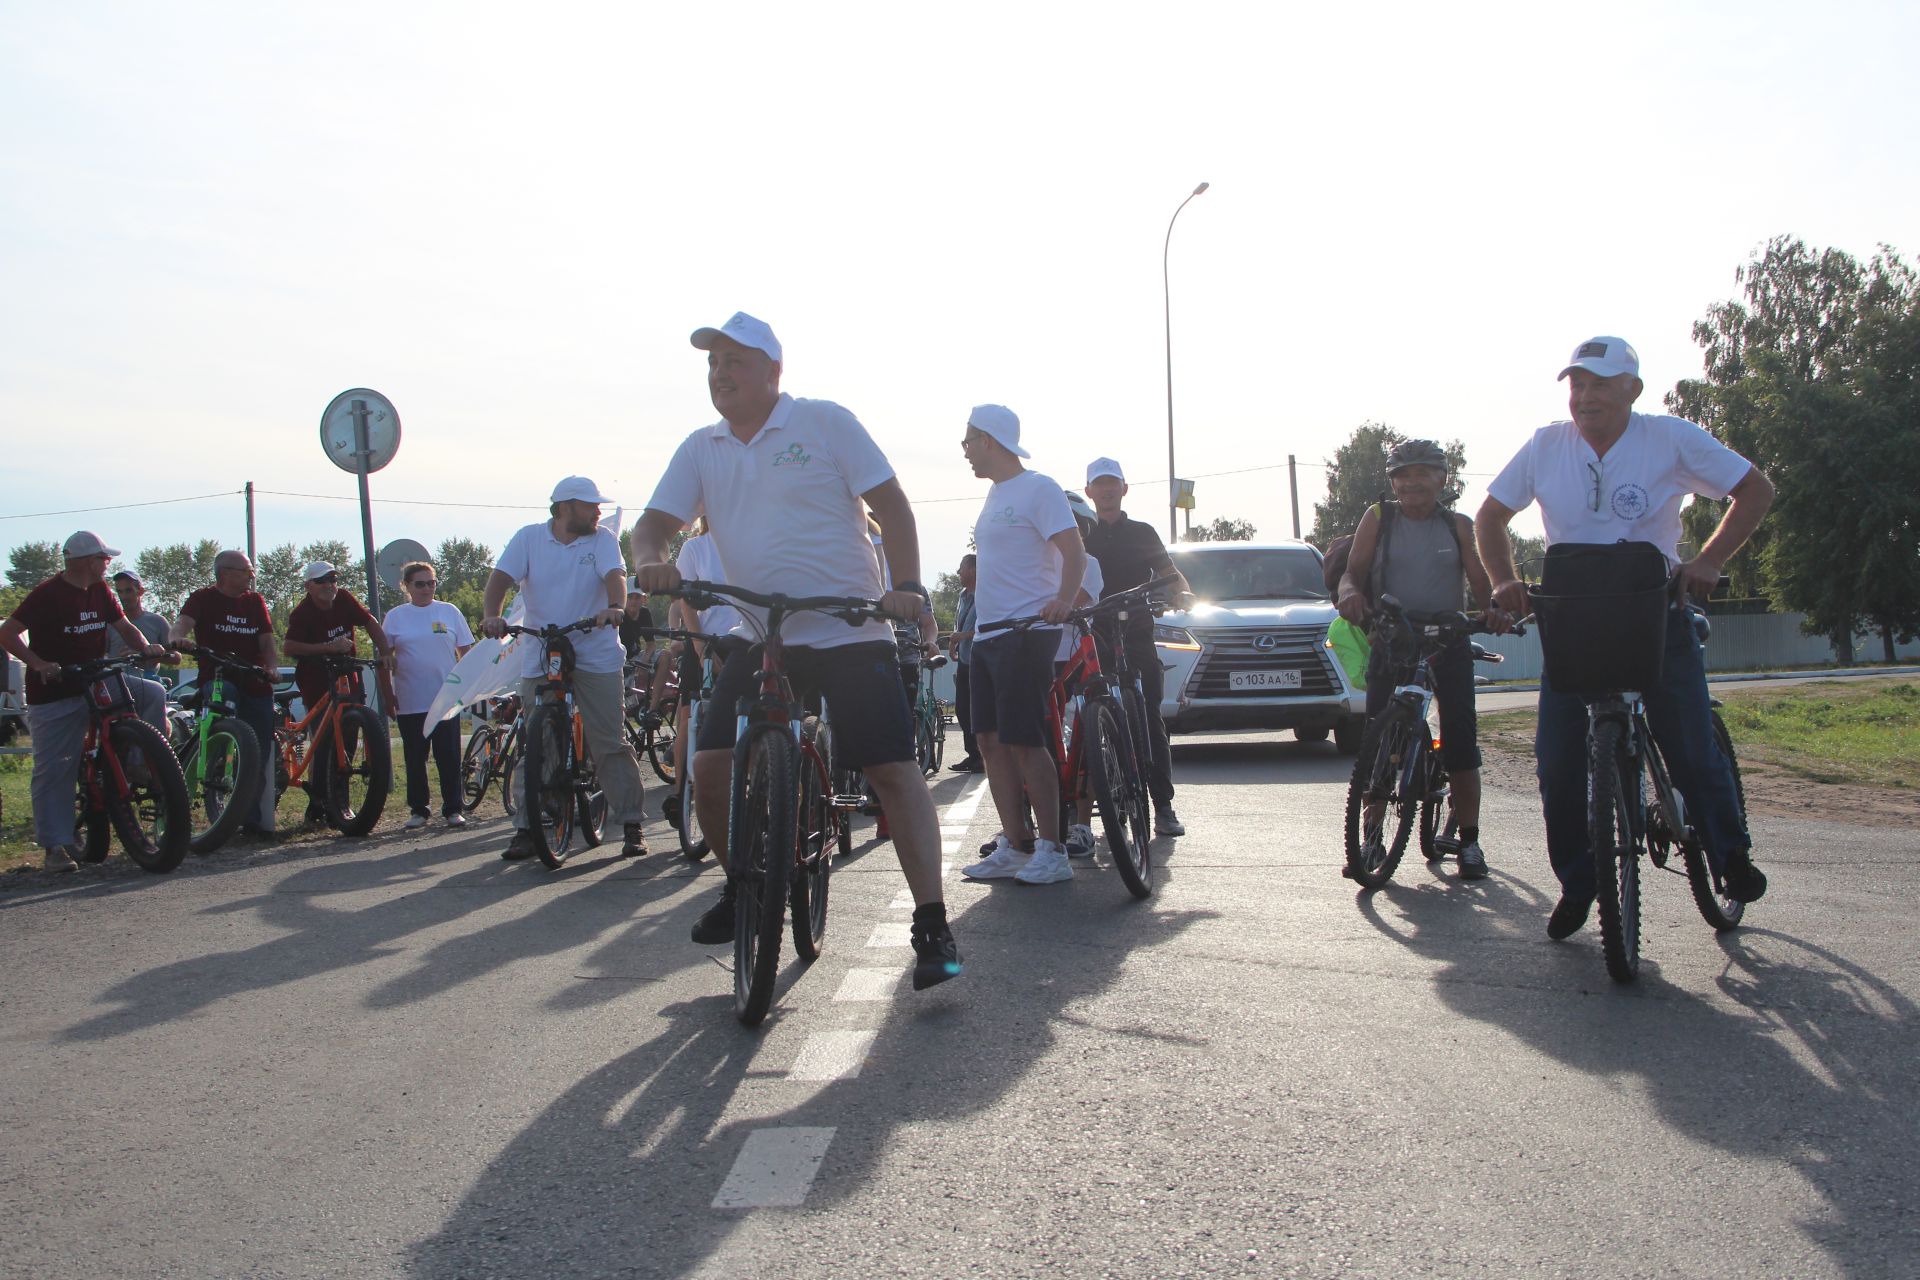 Участники велоэстафеты "Болгар радиосы" побывали в Спасском районе РТ